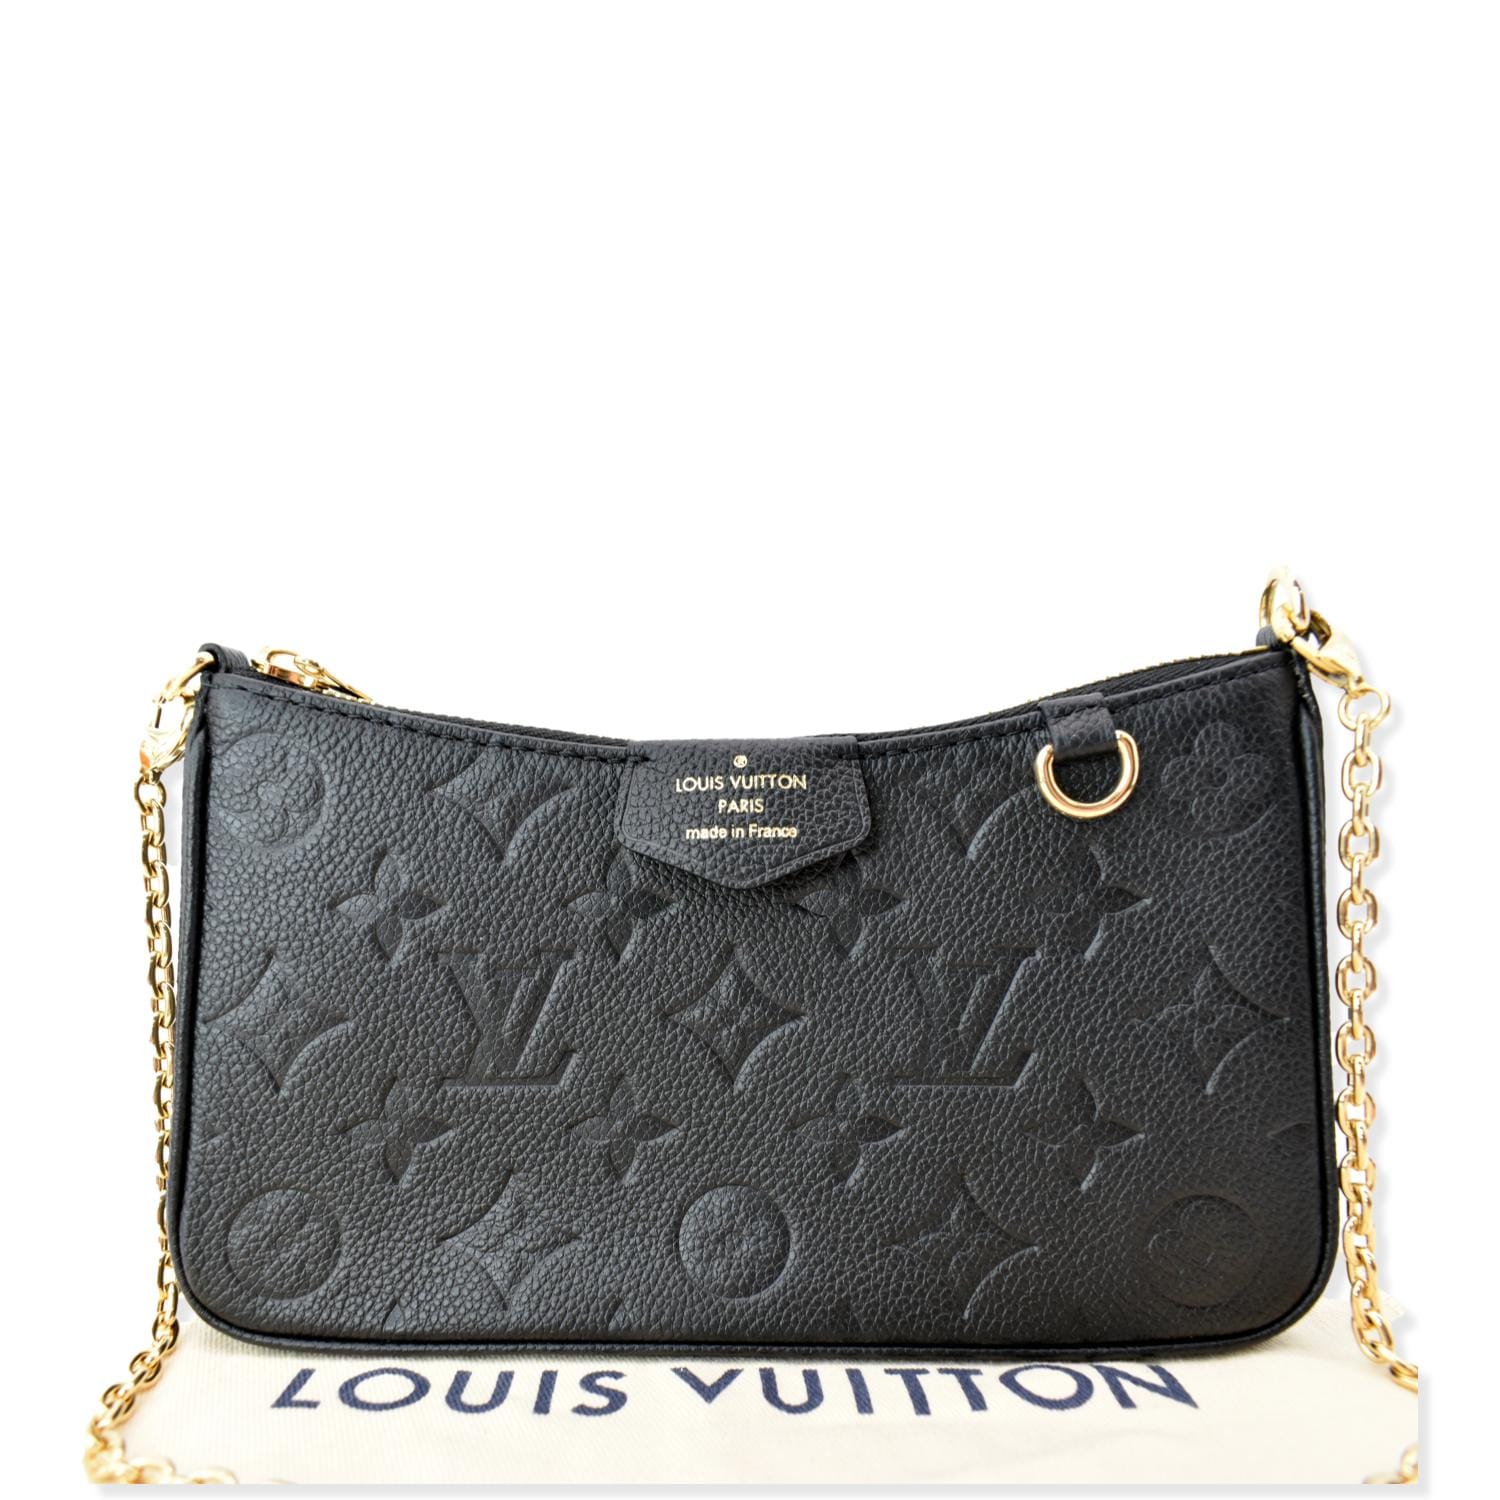 Louis Vuitton Black Leather Shoulder Bag Strap Louis Vuitton